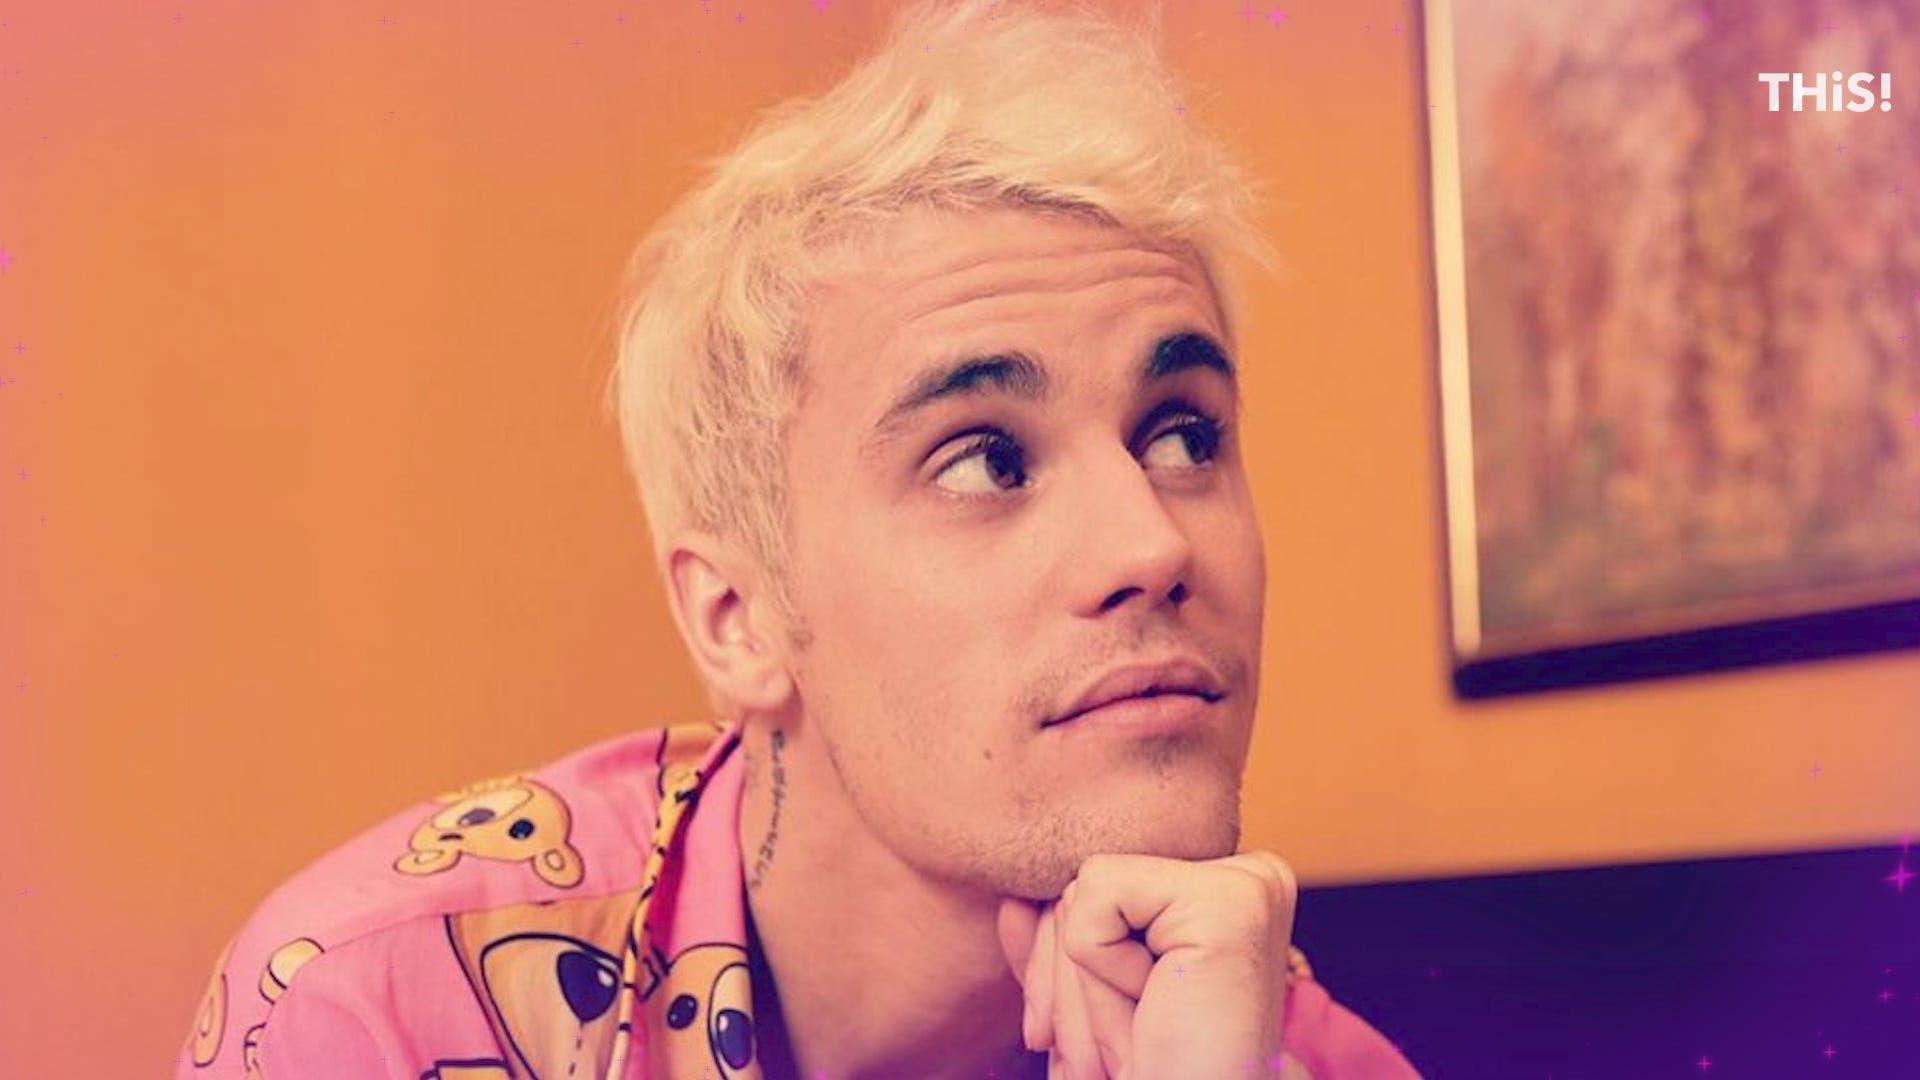 75+] Justin Bieber Hd Wallpaper - WallpaperSafari